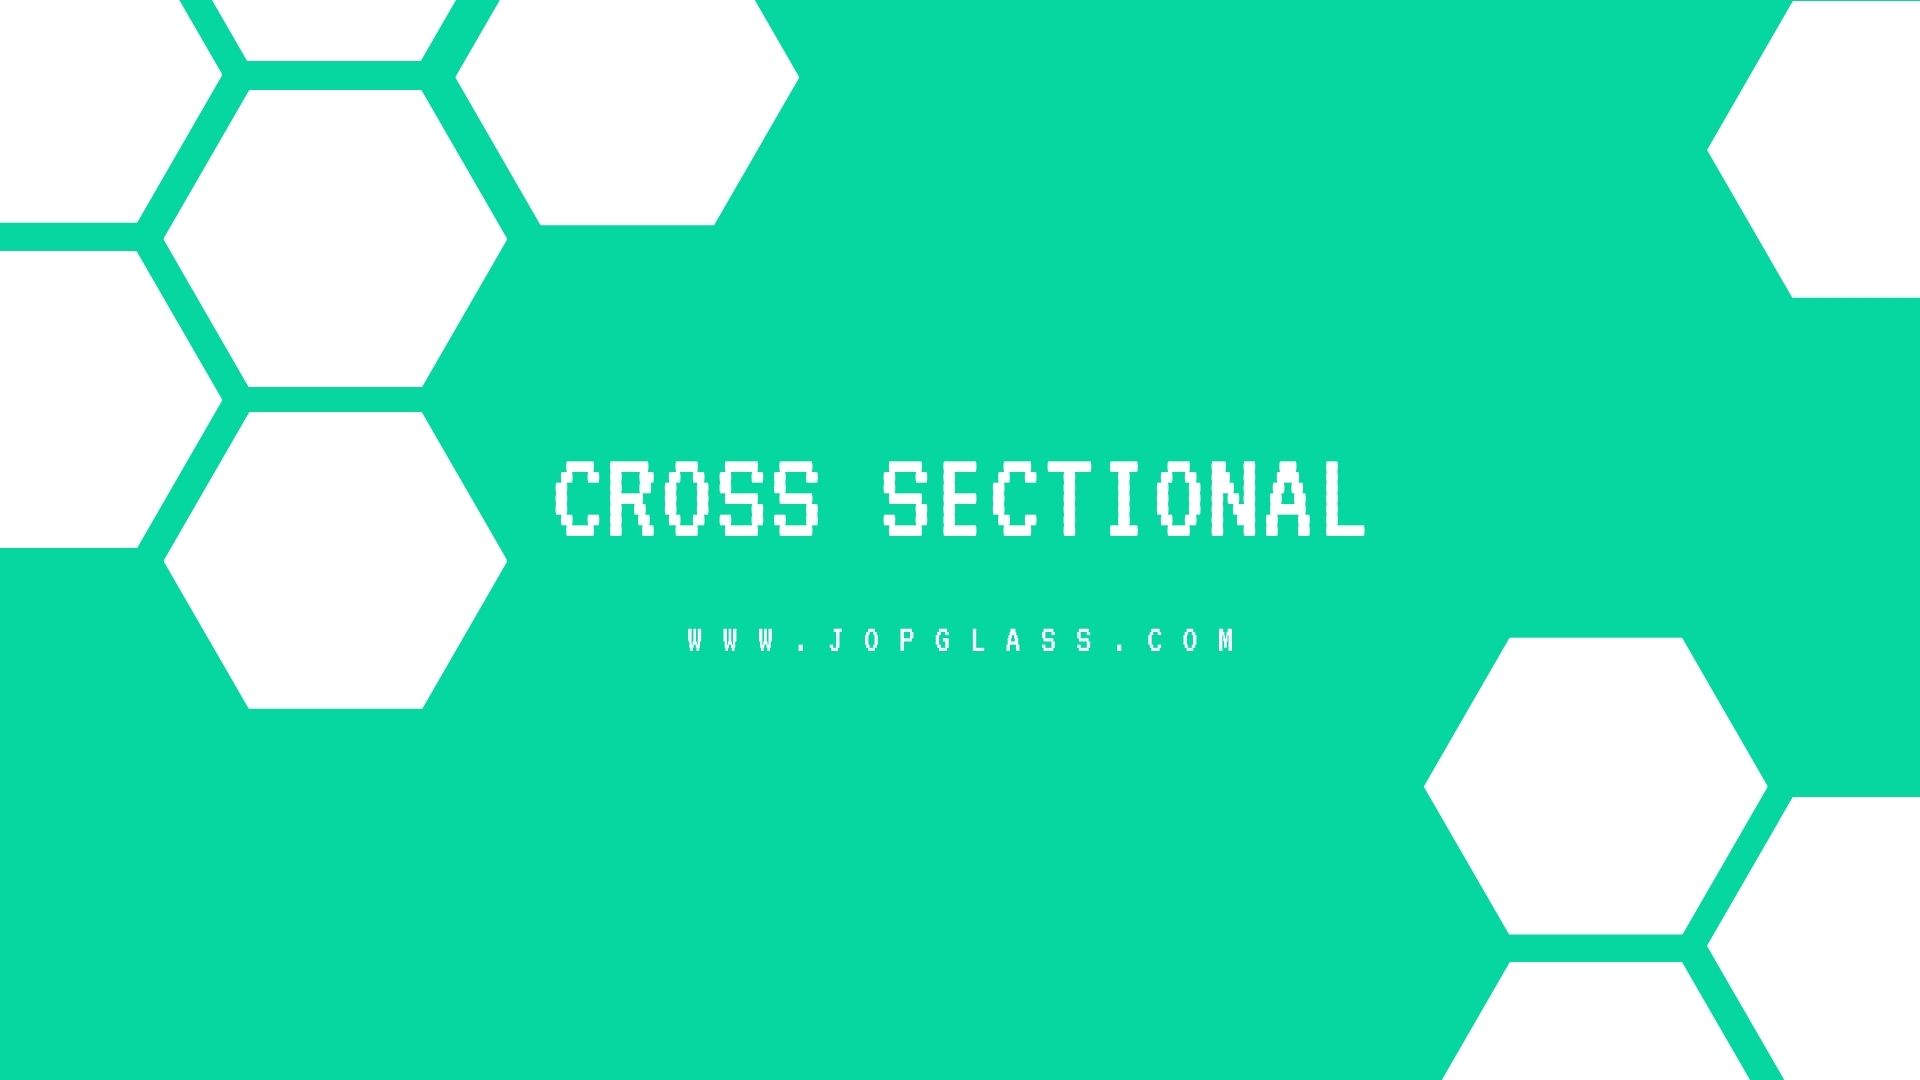 Cross Sectional adalah